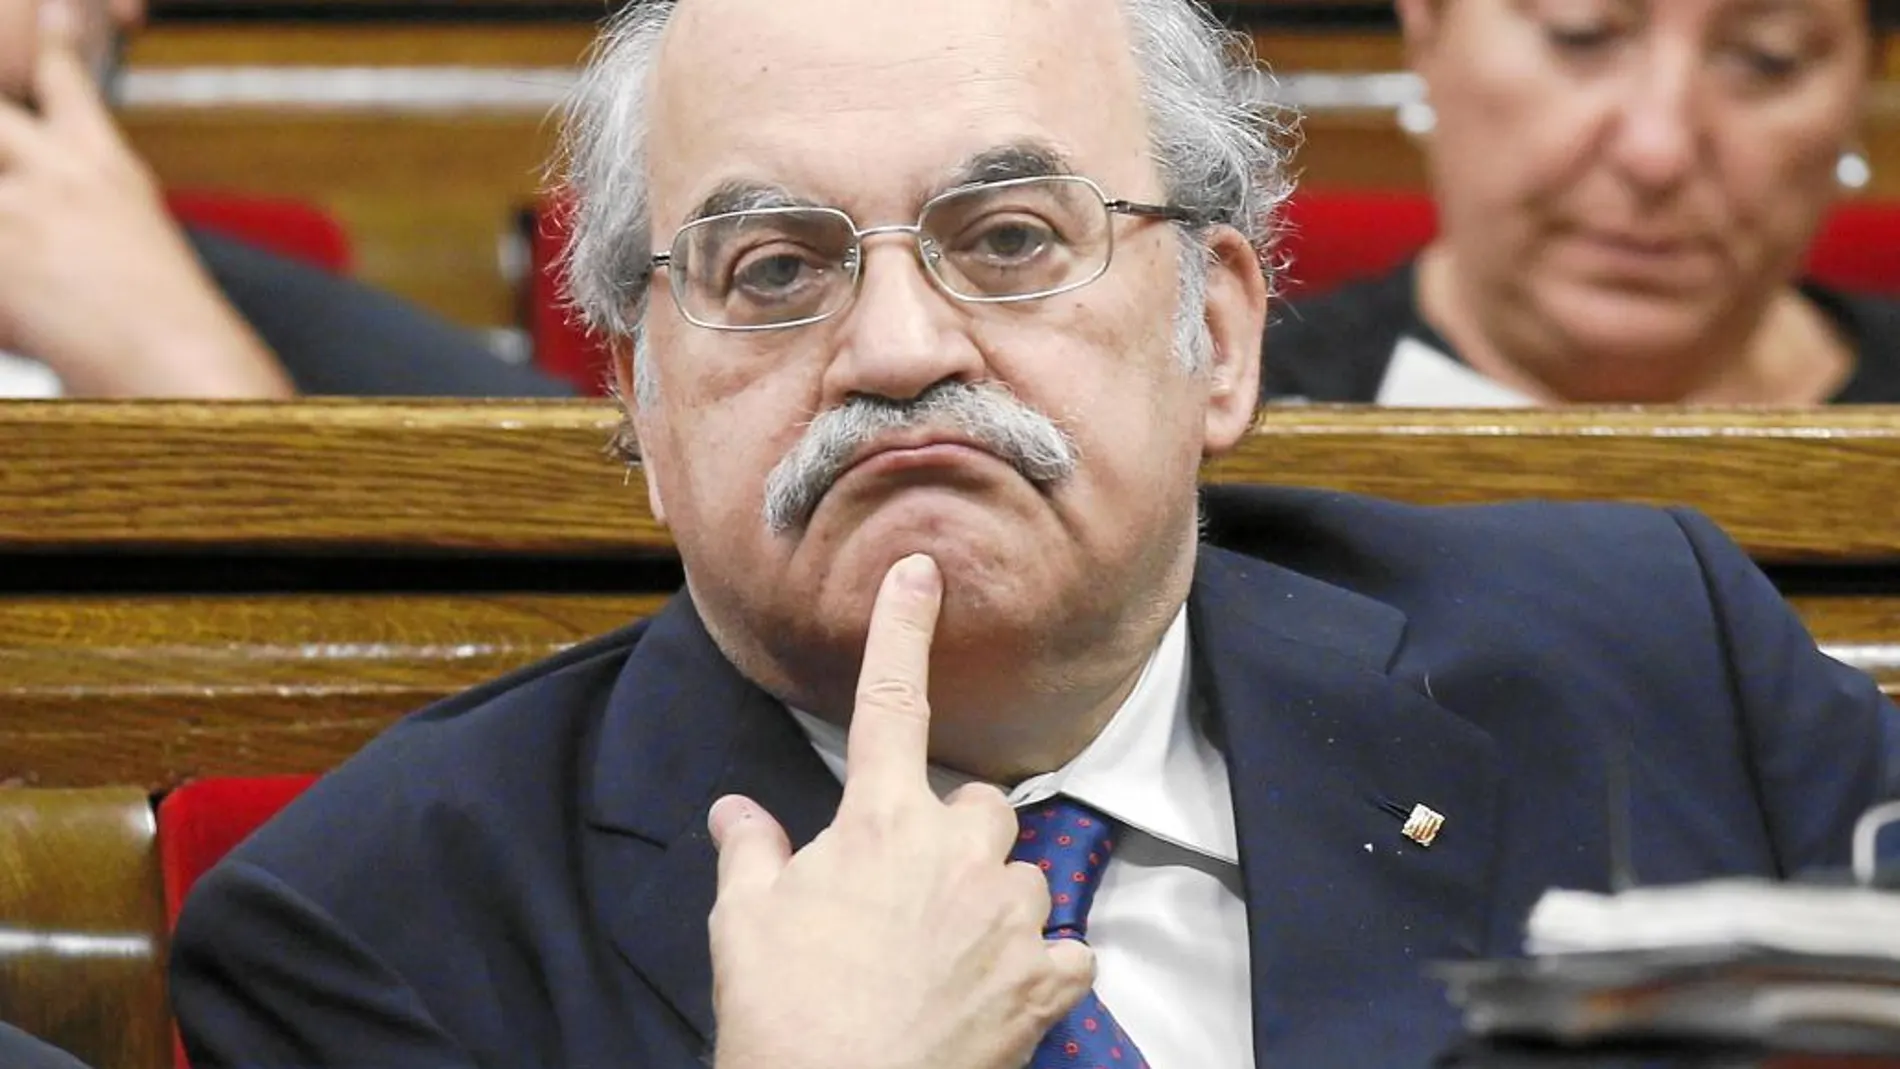 El ex conseller Andreu Mas-Colell avisa de que la tendencia a poner plazos crea tensiones innecesarias